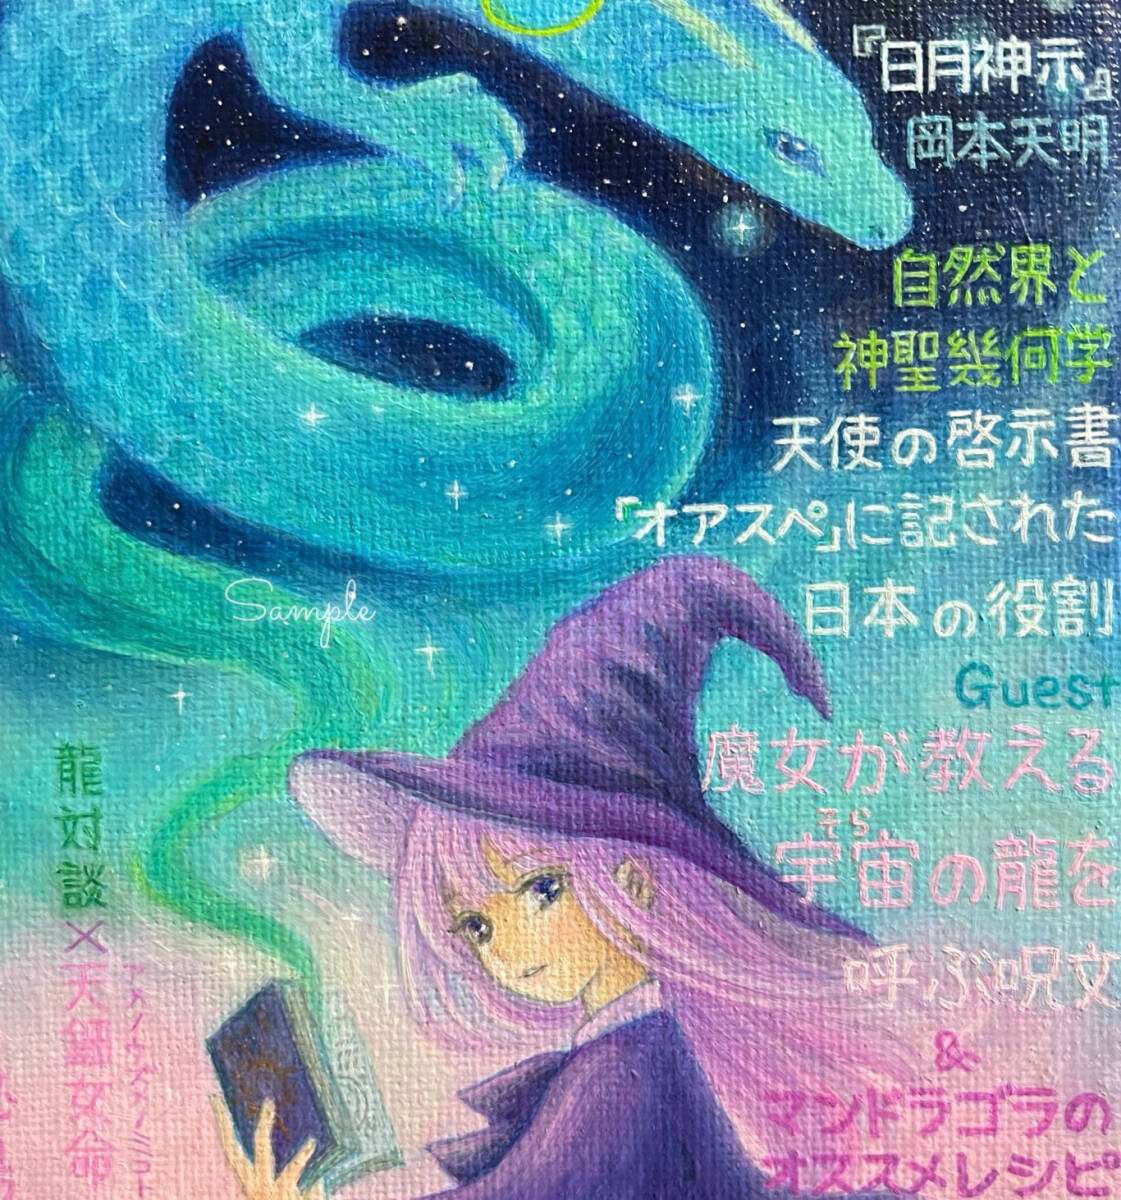 オリジナル手描きイラスト☆月刊Dragon2月号, コミック, アニメグッズ, 手描きイラスト